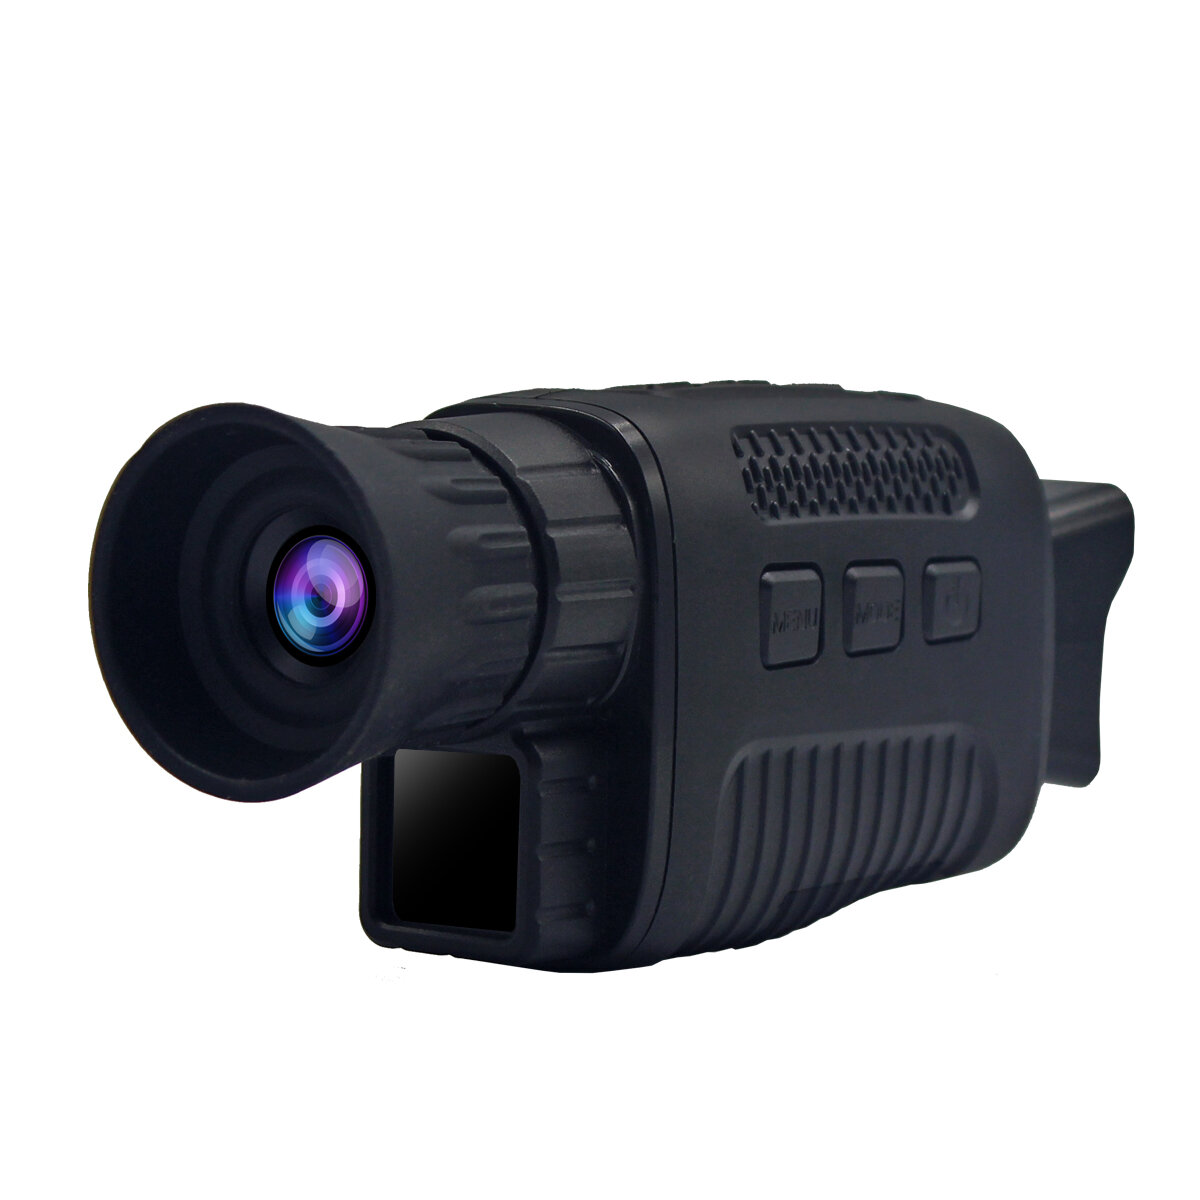 

NV1000-B HD Инфракрасный монокуляр ночного видения камера Фото- и видеосъемка Охотничий телескоп День Ночь Двойного назн